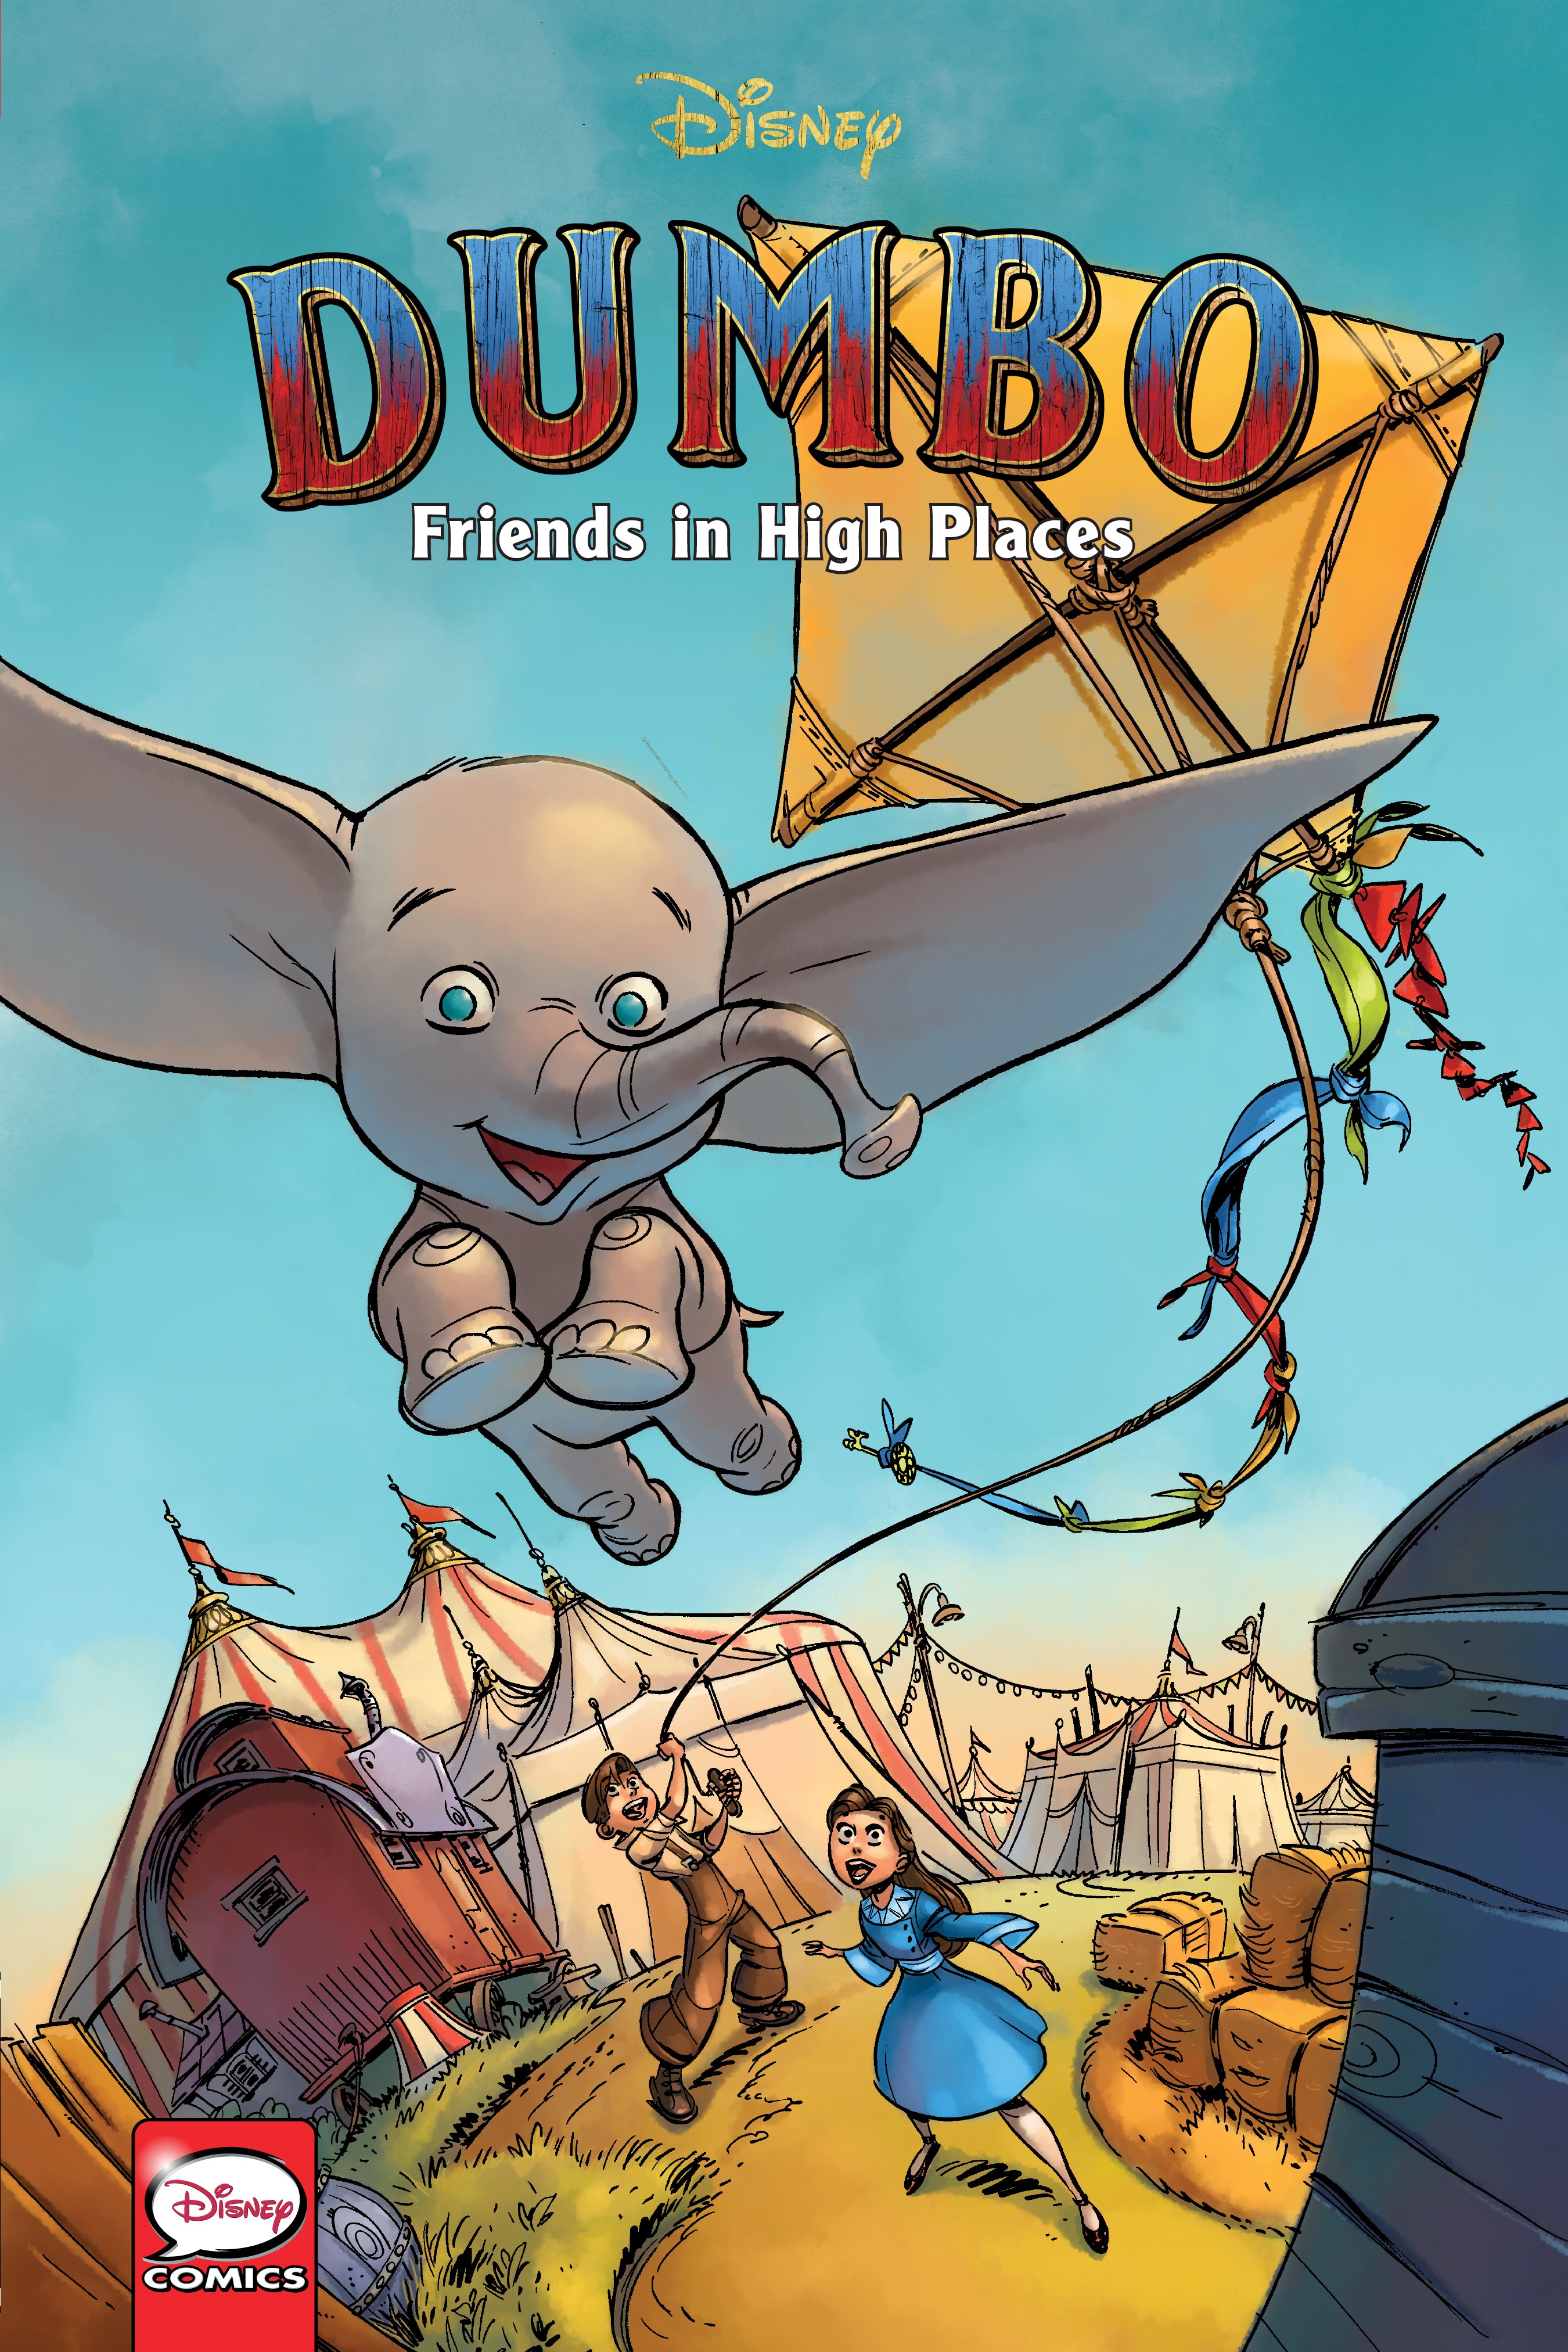 Dumbo Cartoon Porn - Disney Dumbo Friends In High Places Full | Read Disney Dumbo Friends In  High Places Full comic online in high quality. Read Full Comic online for  free - Read comics online in